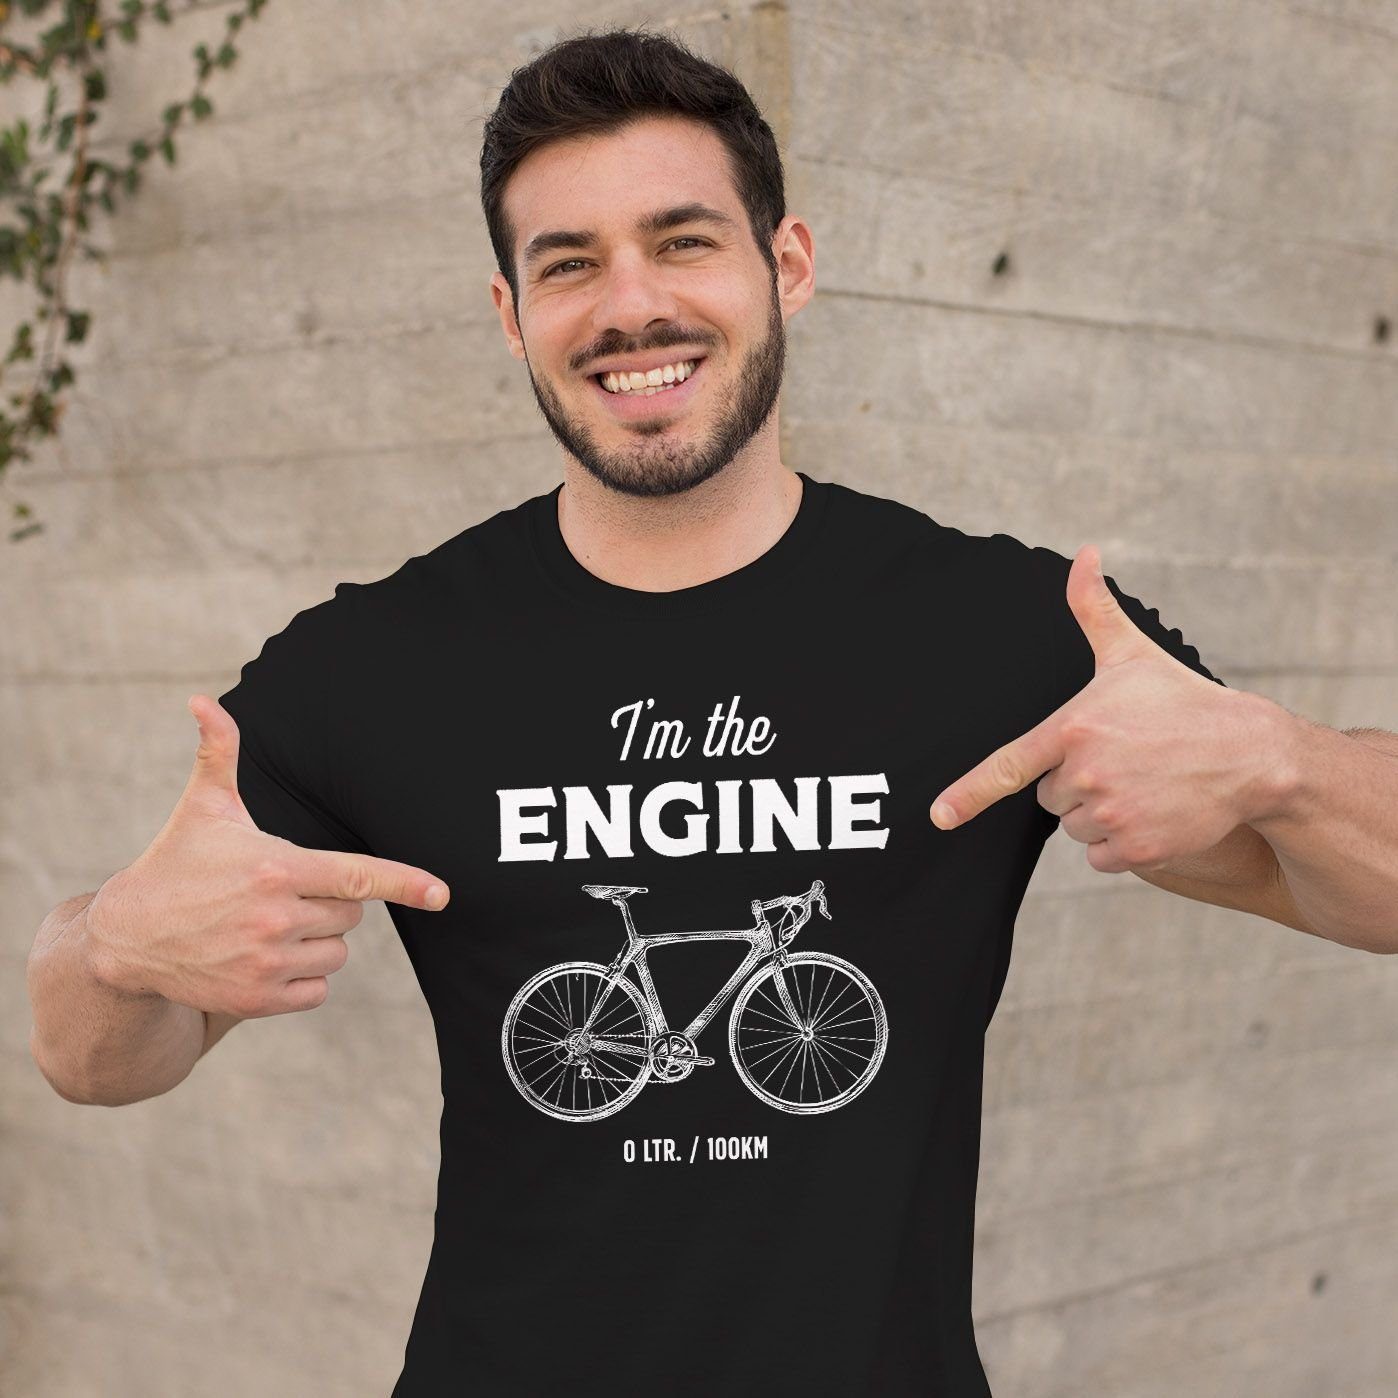 mit T-Shirt Fun-Shirt Moonworks® MoonWorks Herren Rad Bike schwarz Fahrrad Print-Shirt Engine I'm Sprüche Spruch lustig the Print Engine